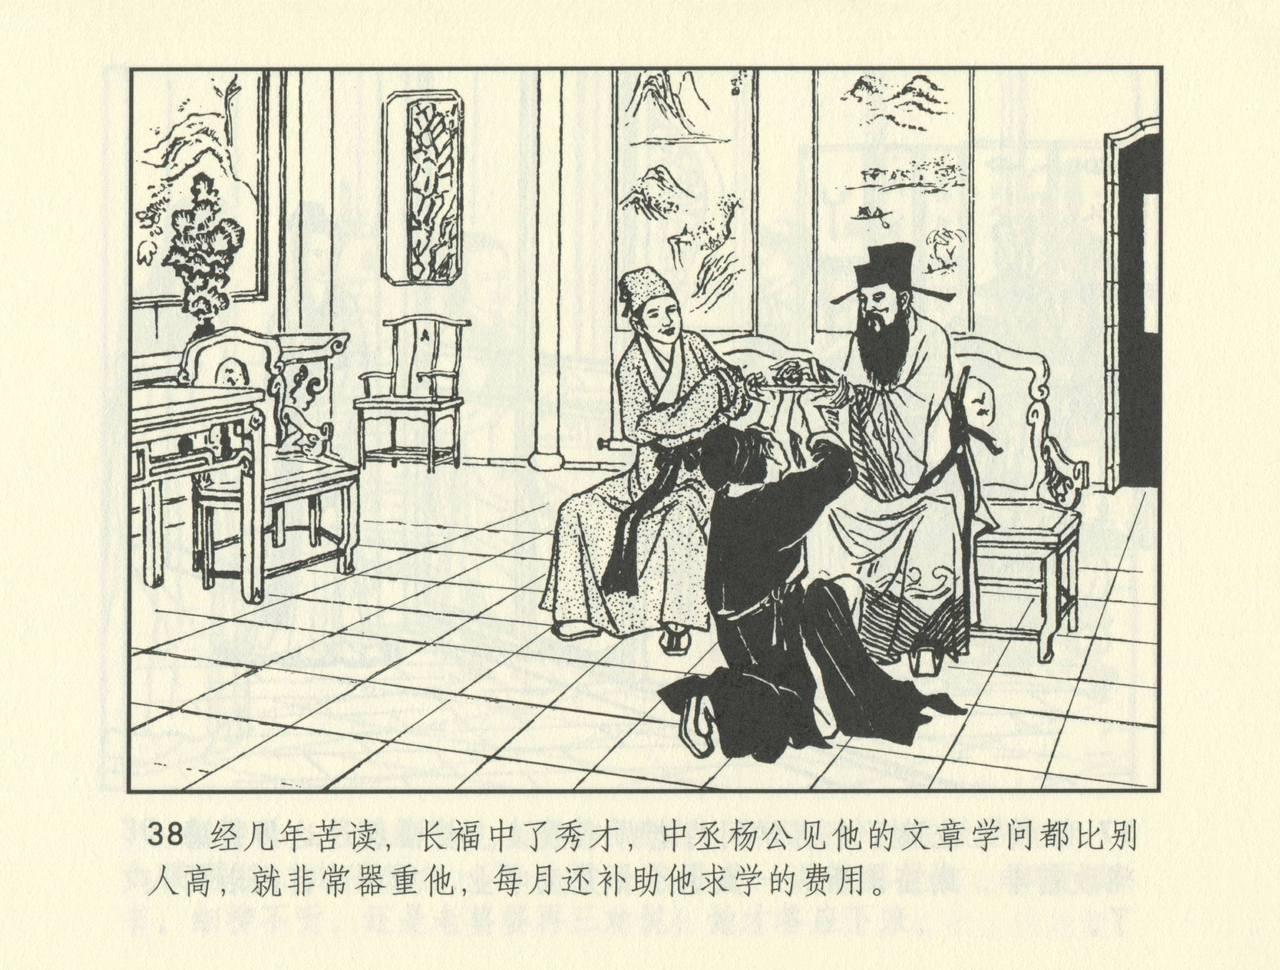 聊斋志异 张玮等绘 天津人民美术出版社 卷二十一 ~ 三十 510